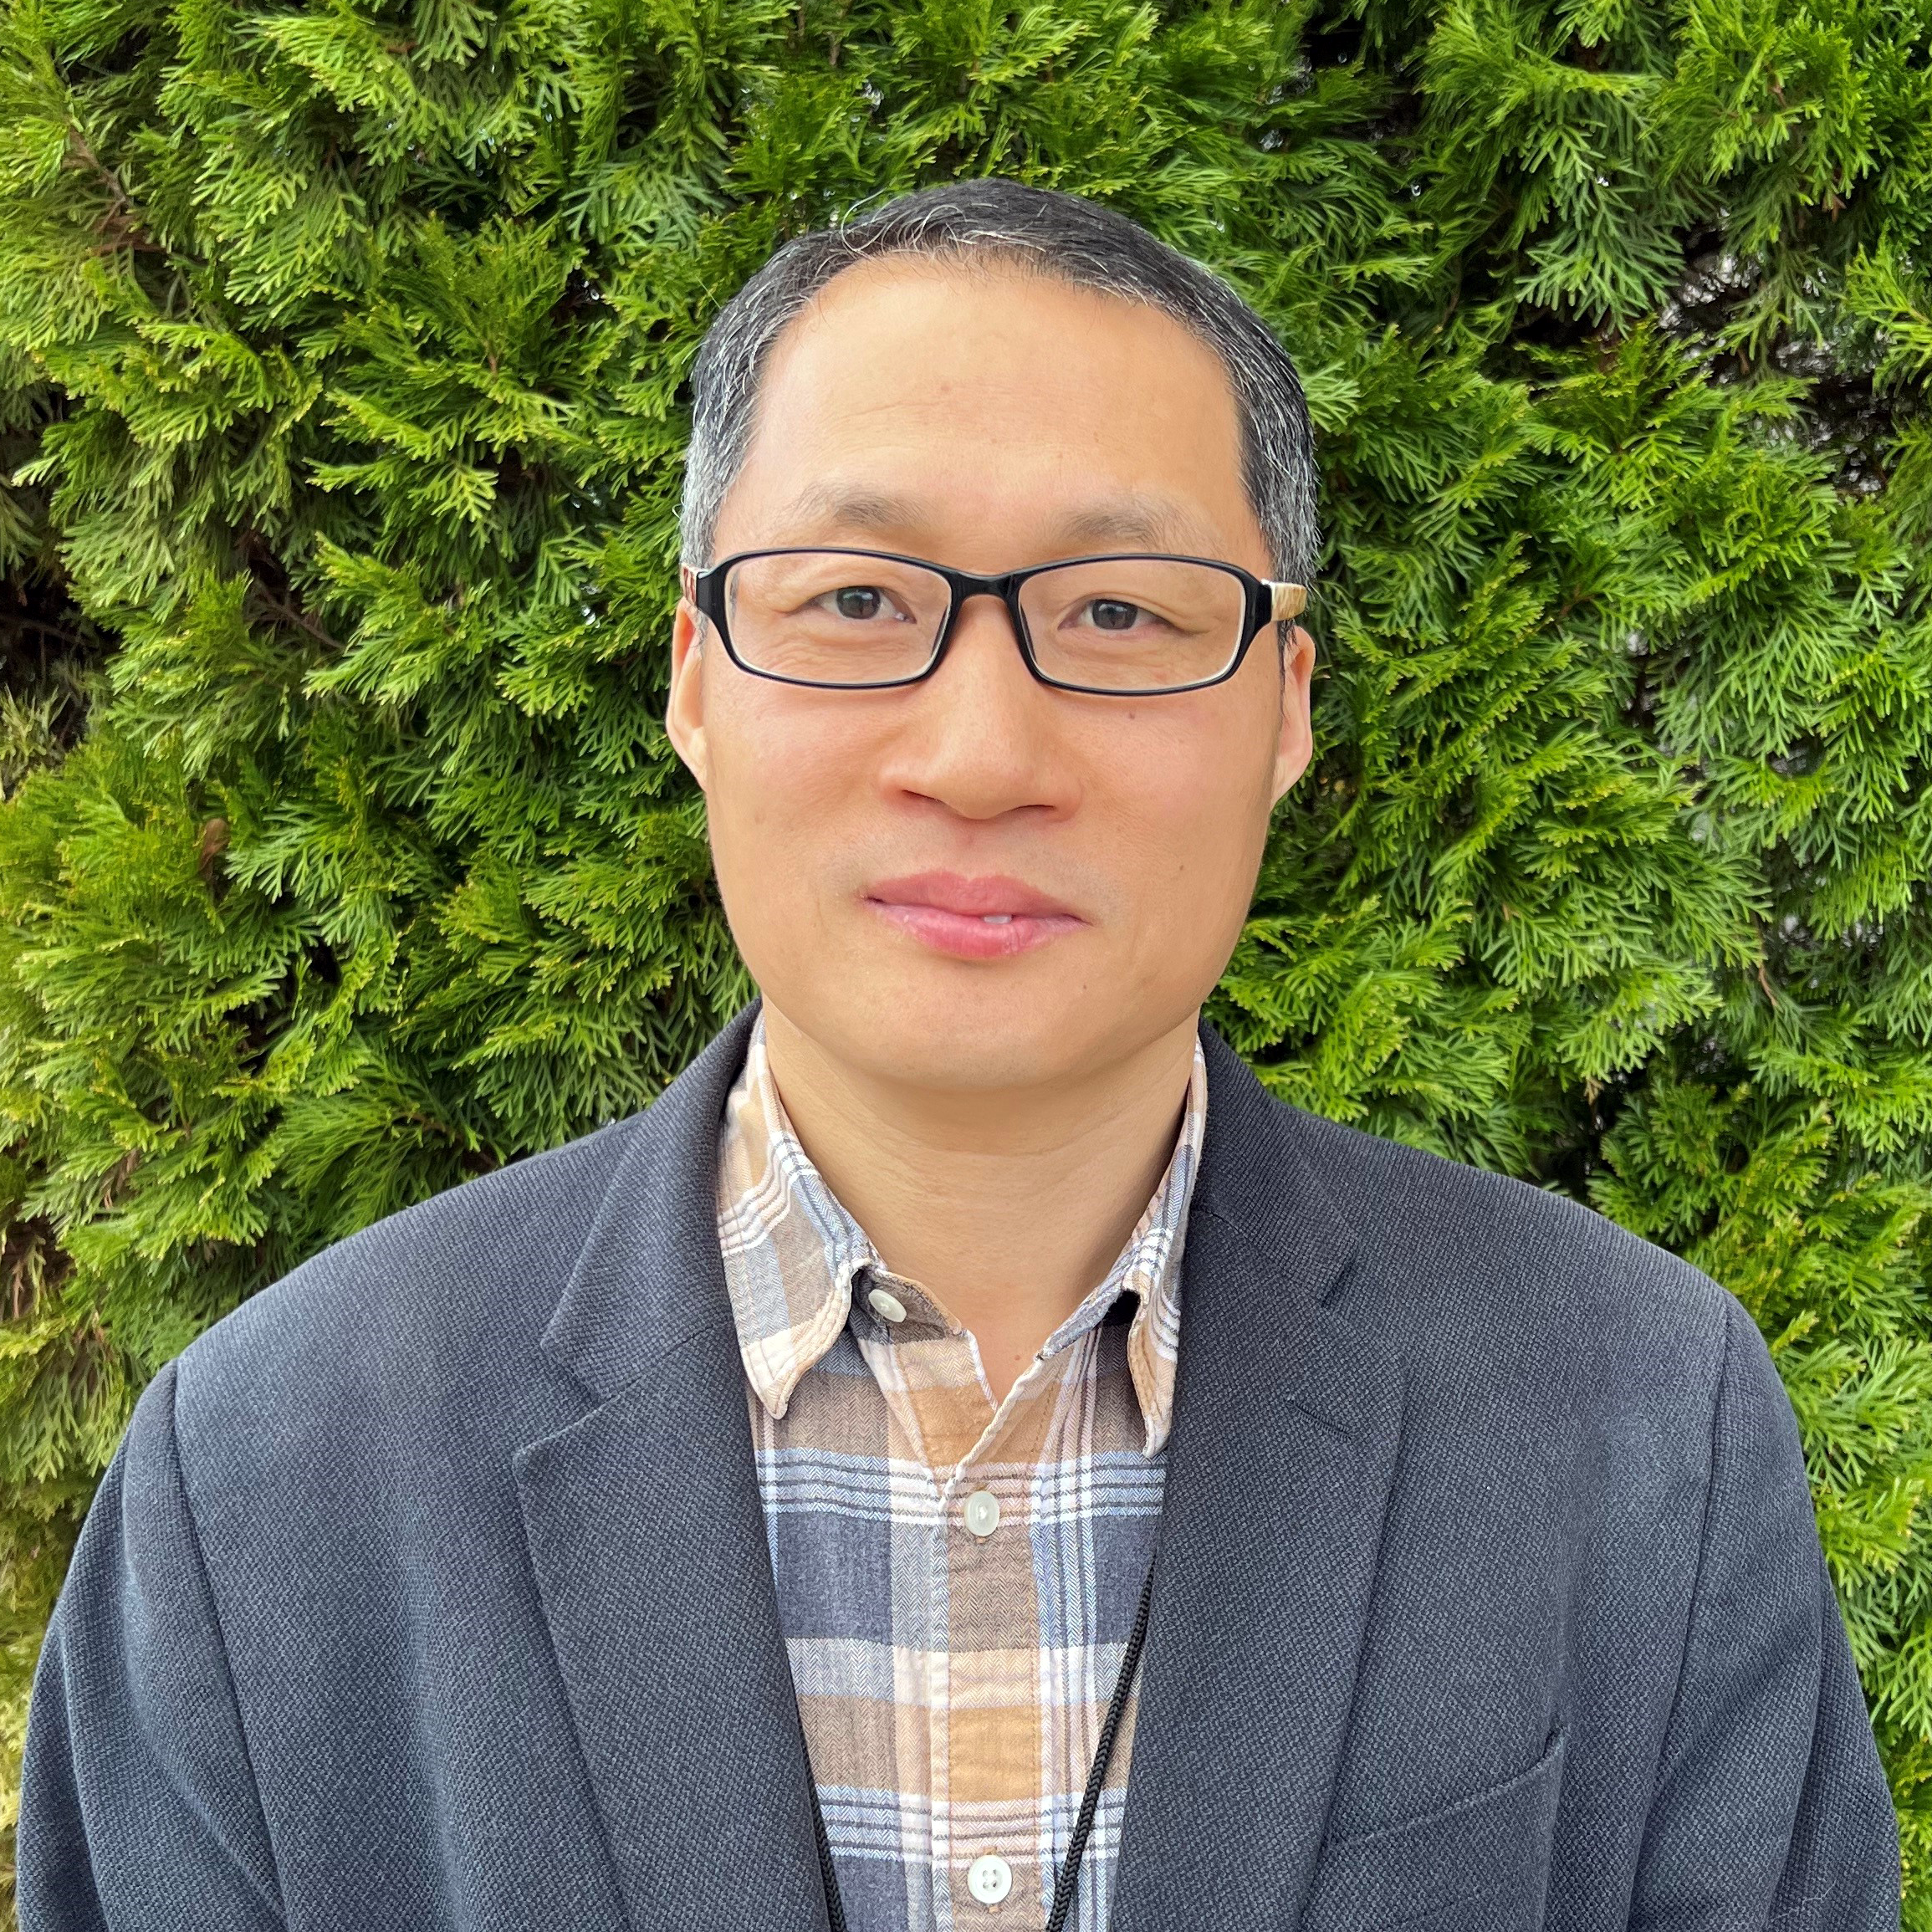 Richard Liu, Power BI Developer, wears a blazer in his headshot in front of a bush